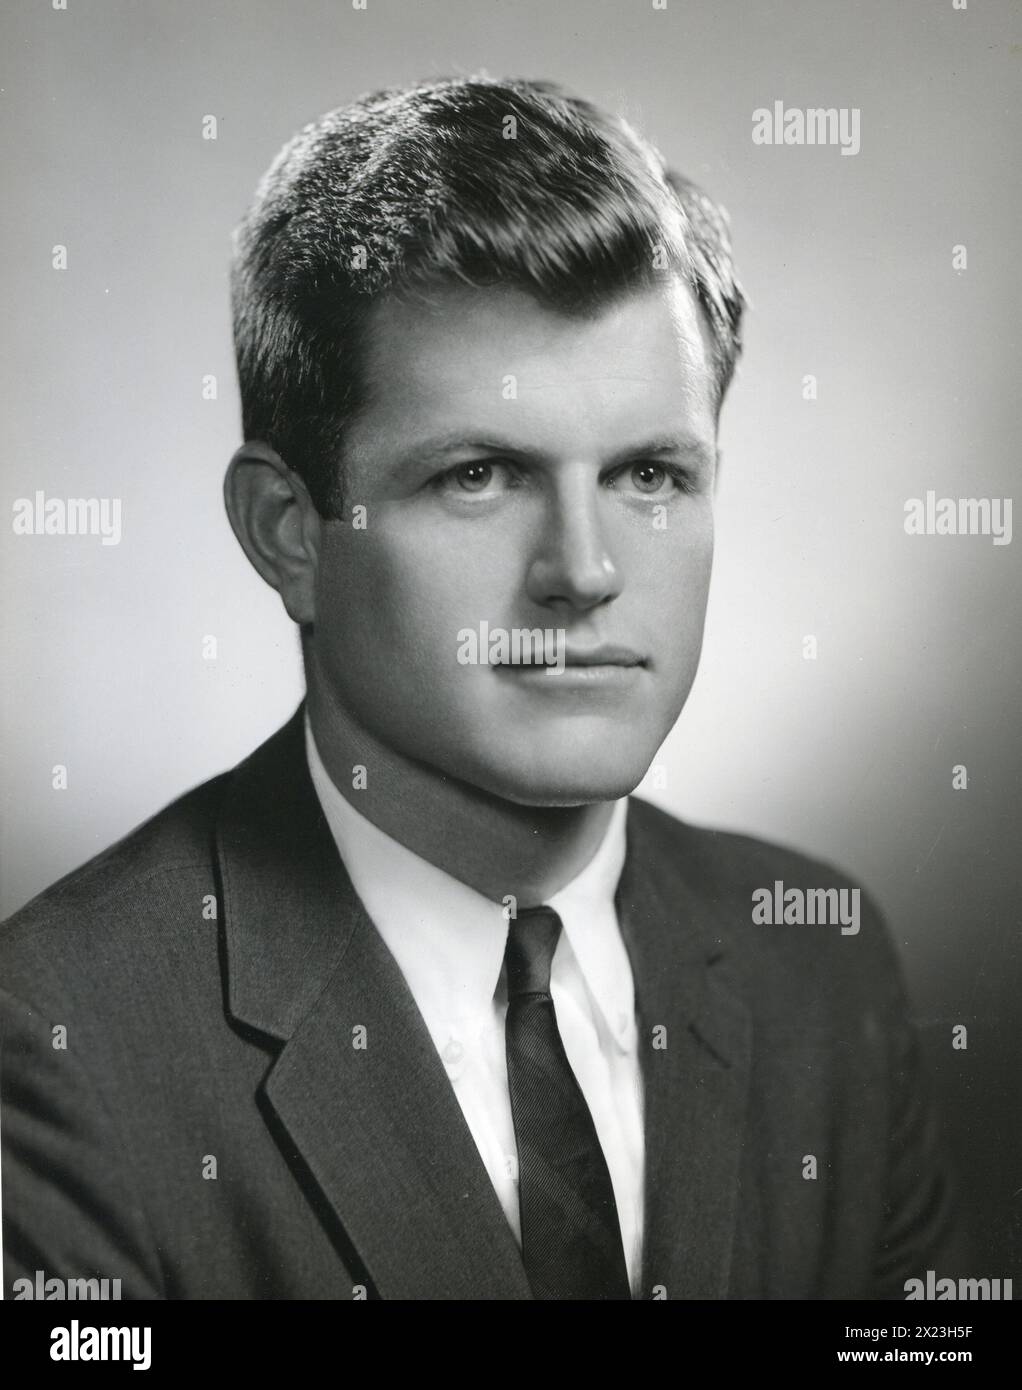 1960: Edward Kennedy, 29-jähriger Bruder von John F. Kennedy. Stockfoto